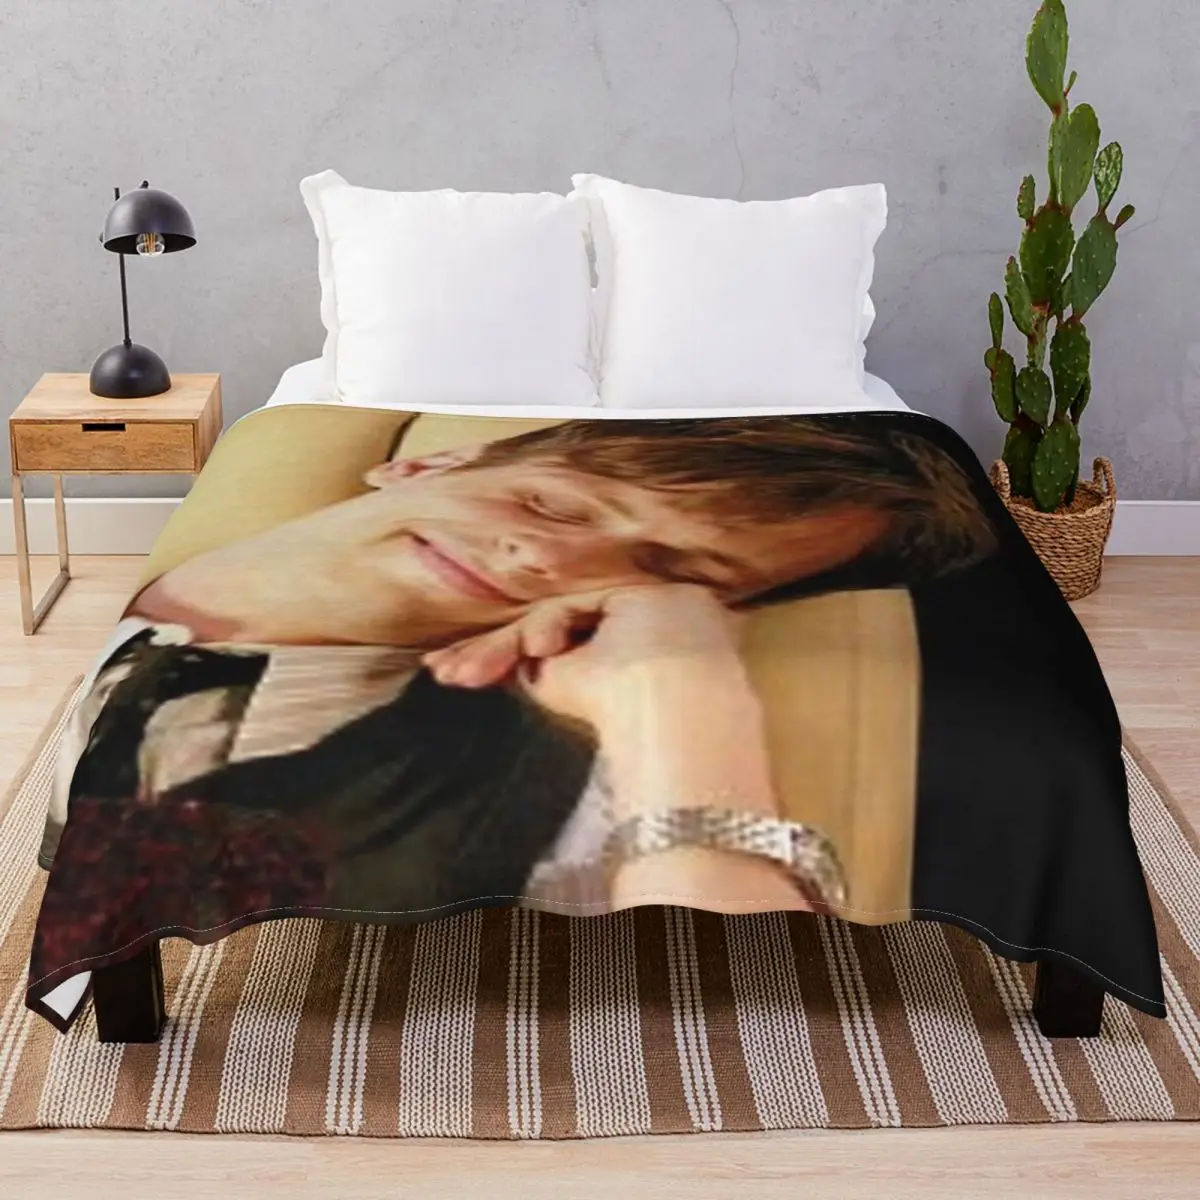 Spencer Reid Blankets Velvet Printed Multifunction Throw Blanket for Bedding Sofa Travel Office